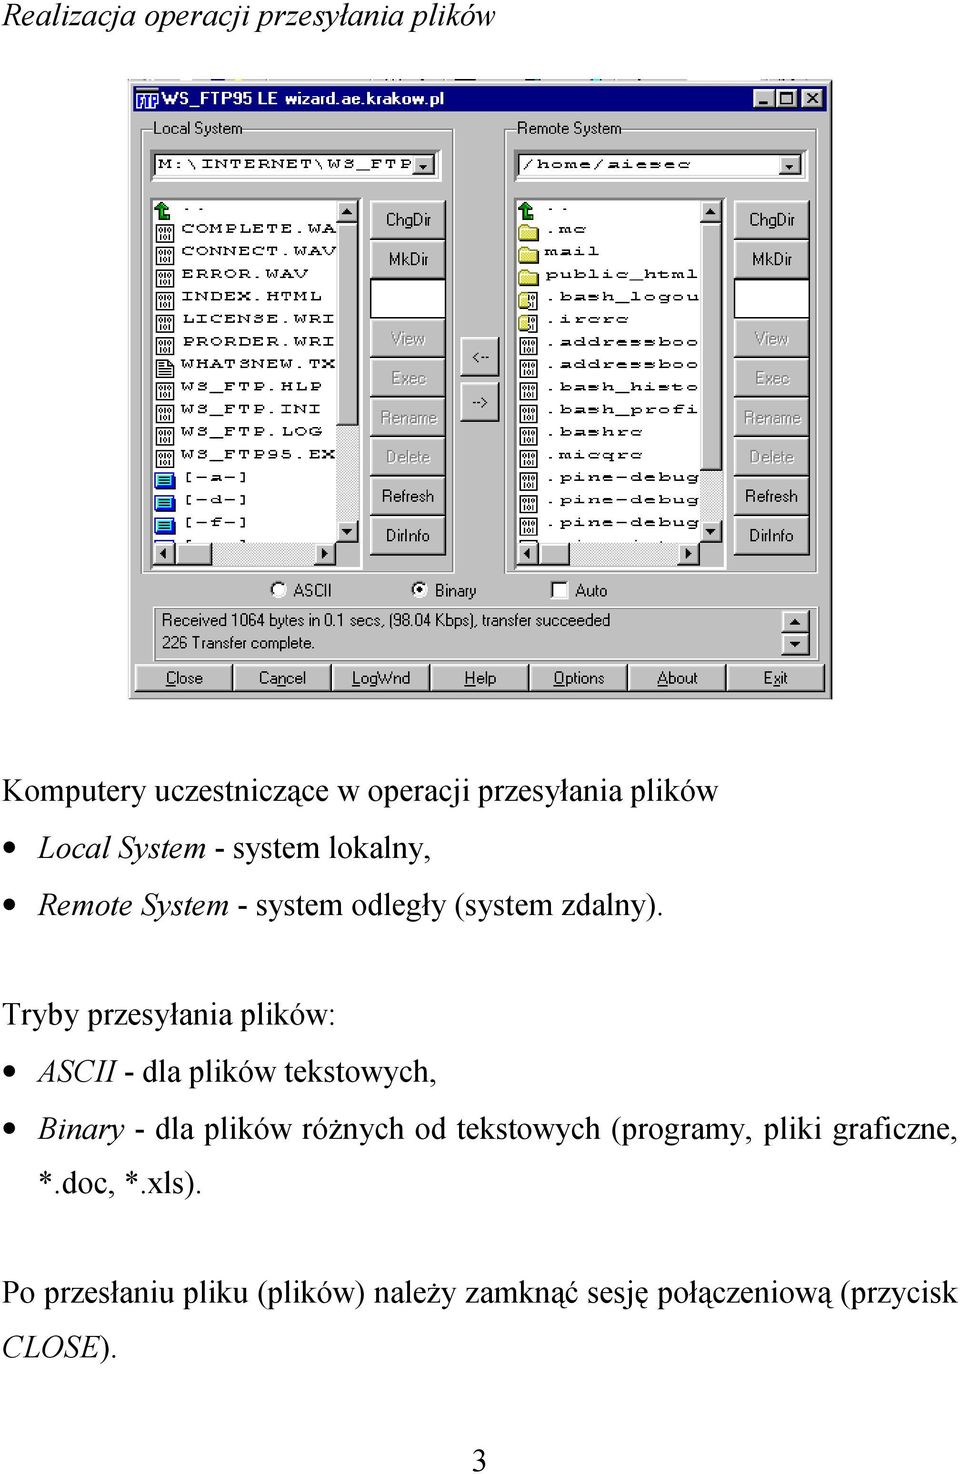 Tryby przesyłania plików: ASCII - dla plików tekstowych, Binary - dla plików różnych od tekstowych